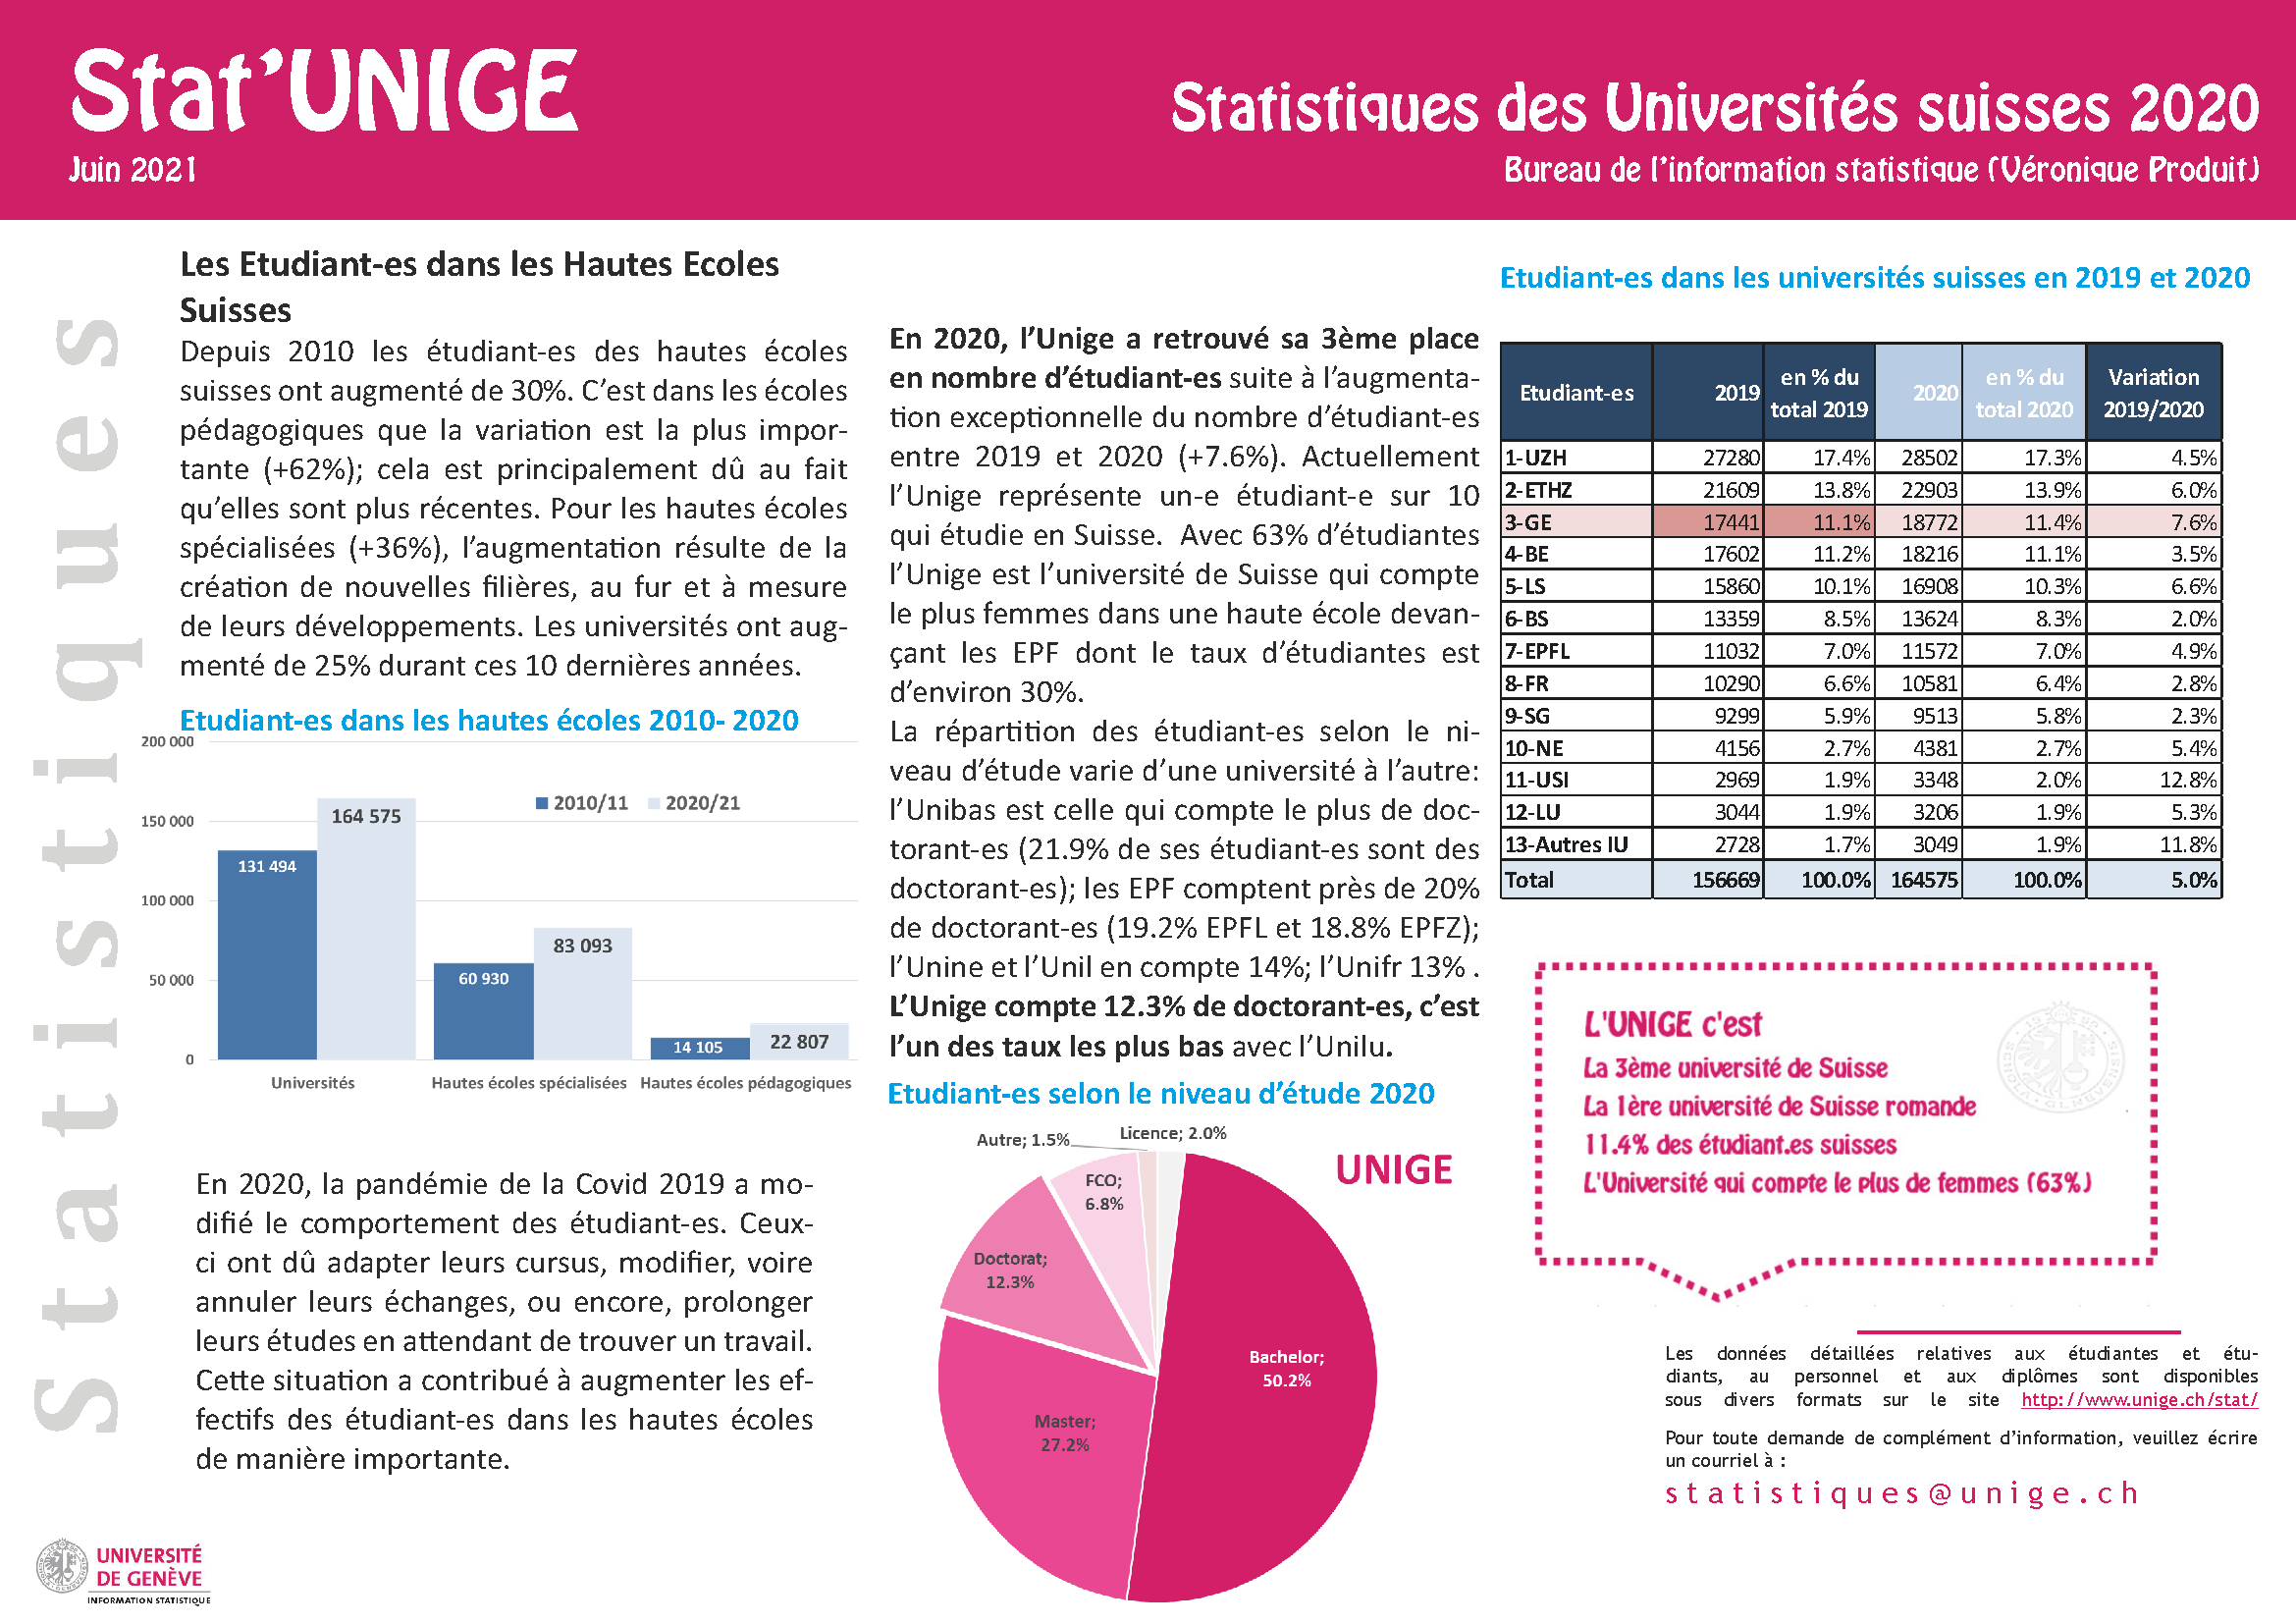 Stat'UNIGE_Etudiant-es_en Suisse_2020.png